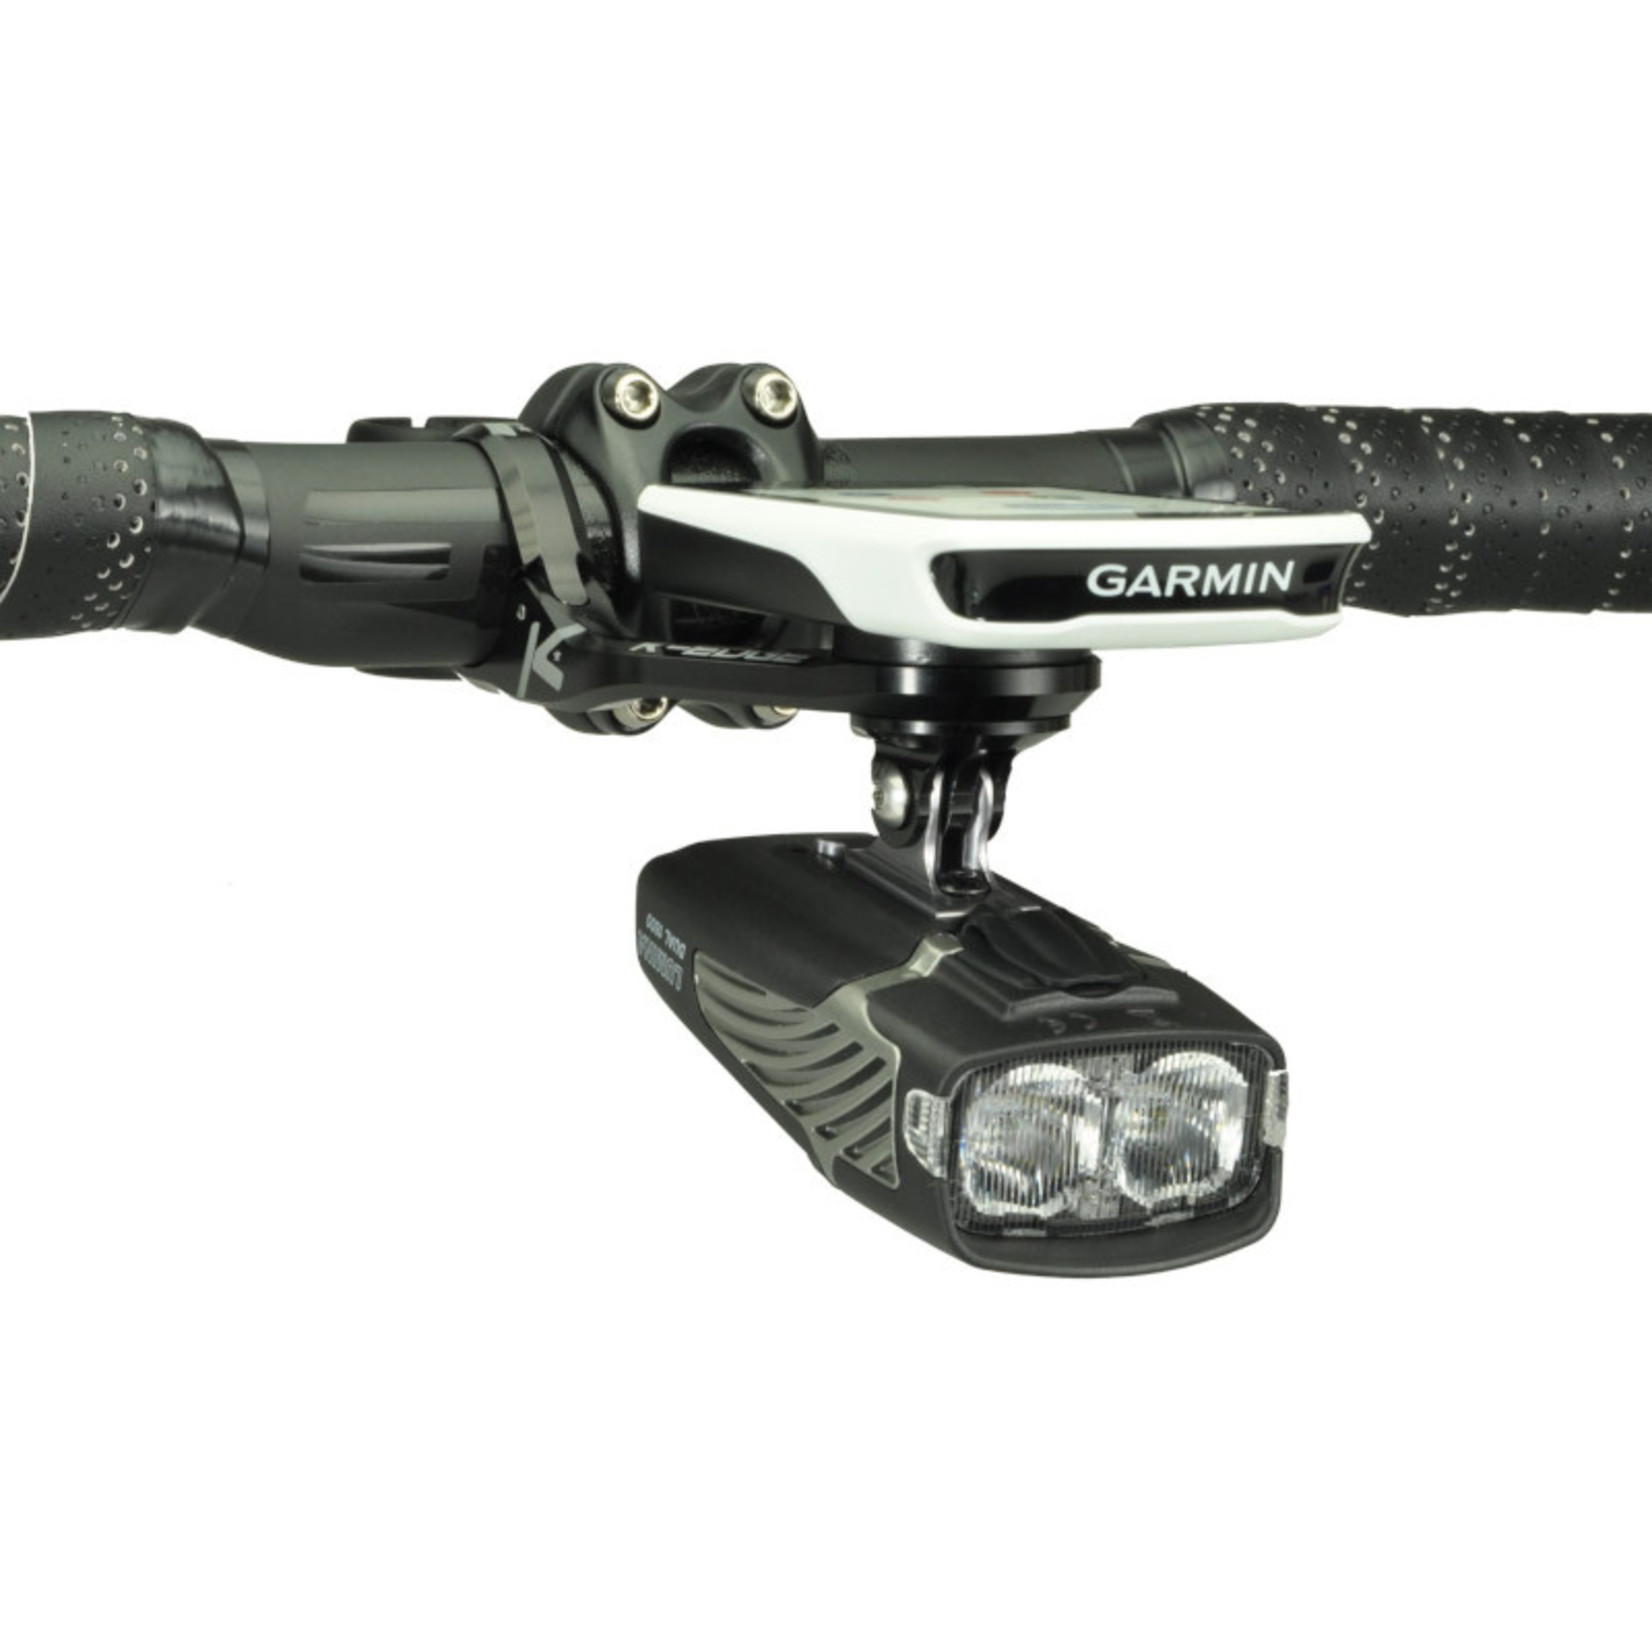 K-Egde K-Edge MAX XL Combo Mount for Garmin - 31.8mm - Black